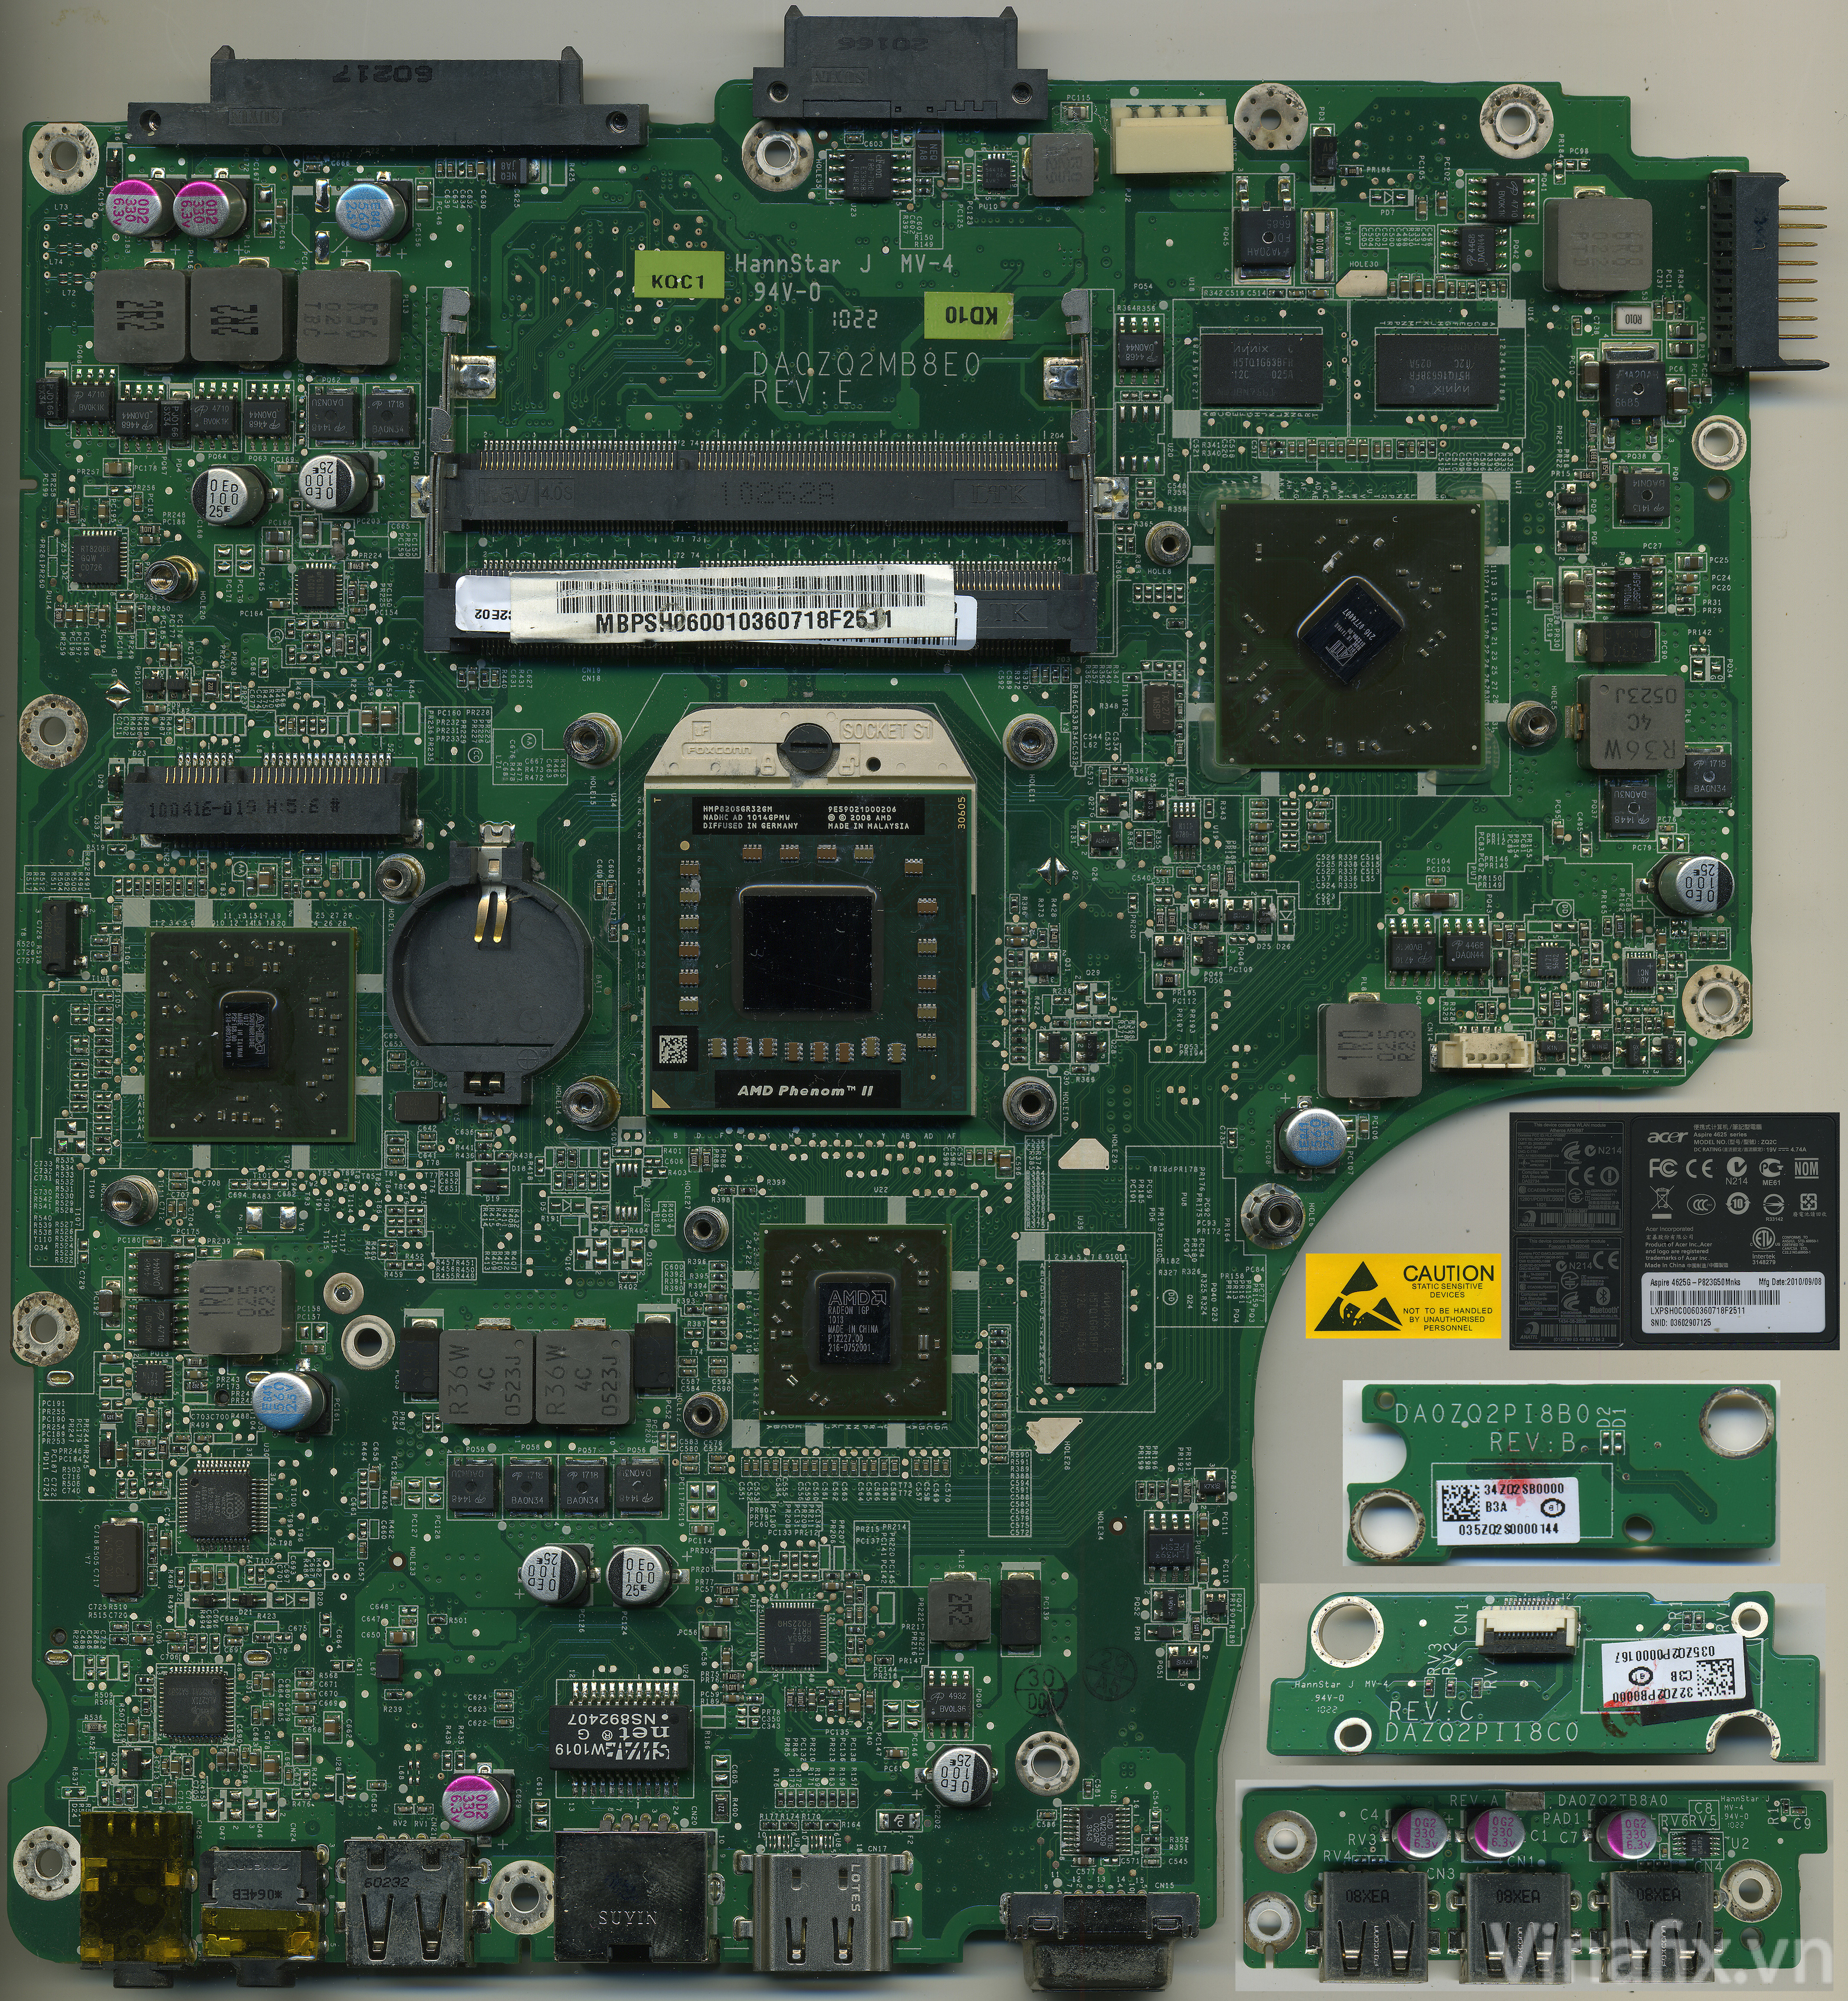 Acer Aspire 4625 Series ( 4625G-P823G50Mnks Model. ZQ2C ) [ DA0ZQ2MB8E0 Rev.E